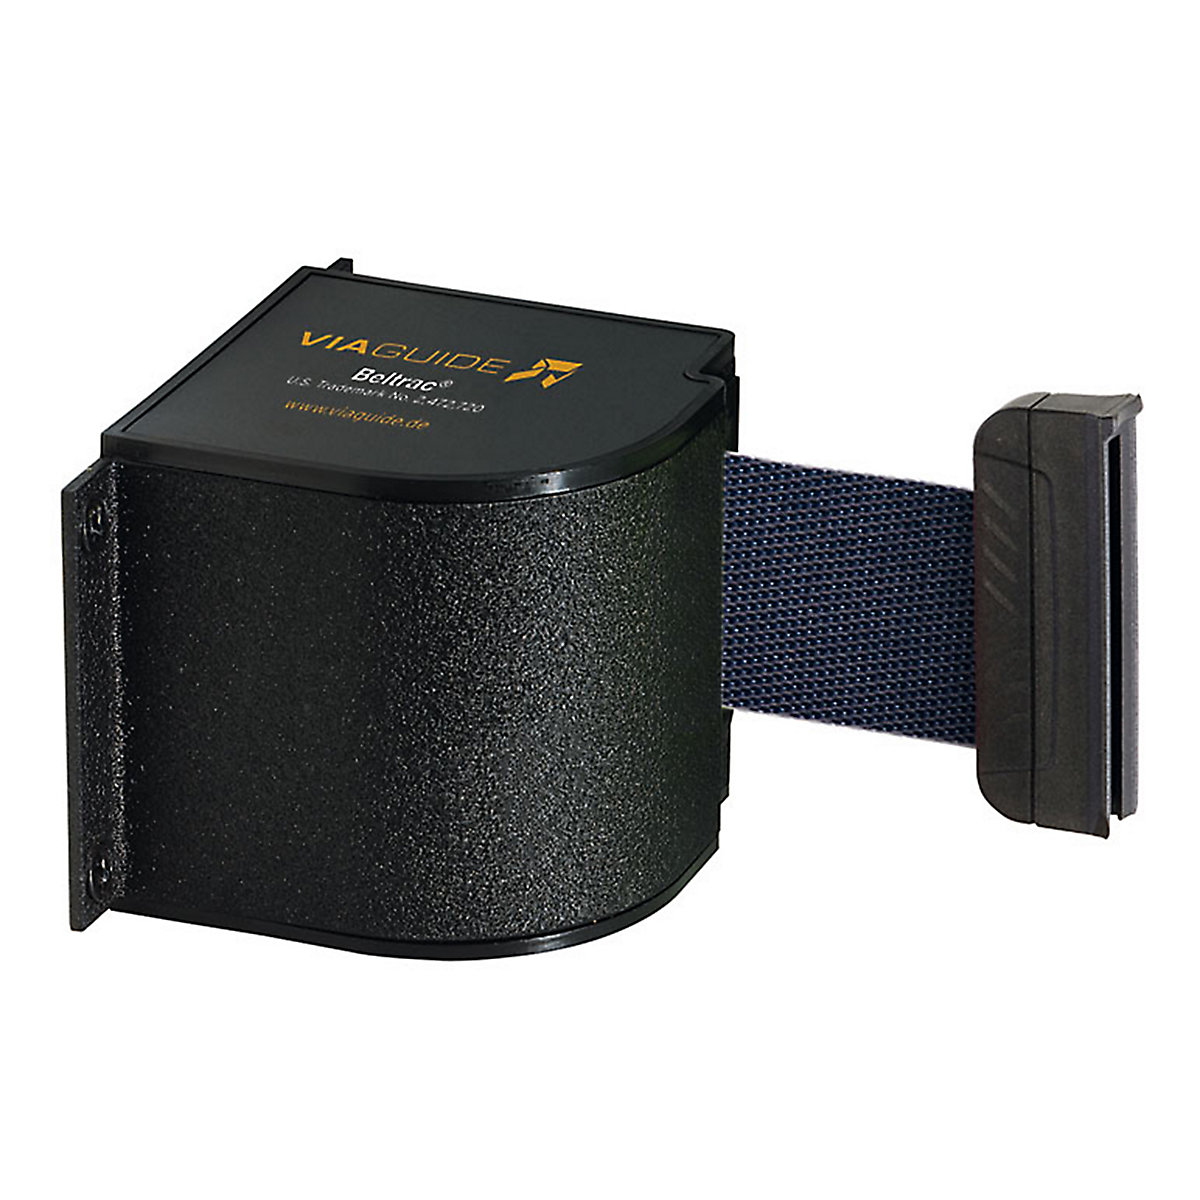 Cassete de cinta Wall Mount, extração máx. da cinta 5400 mm, cor da cinta azul escuro-7